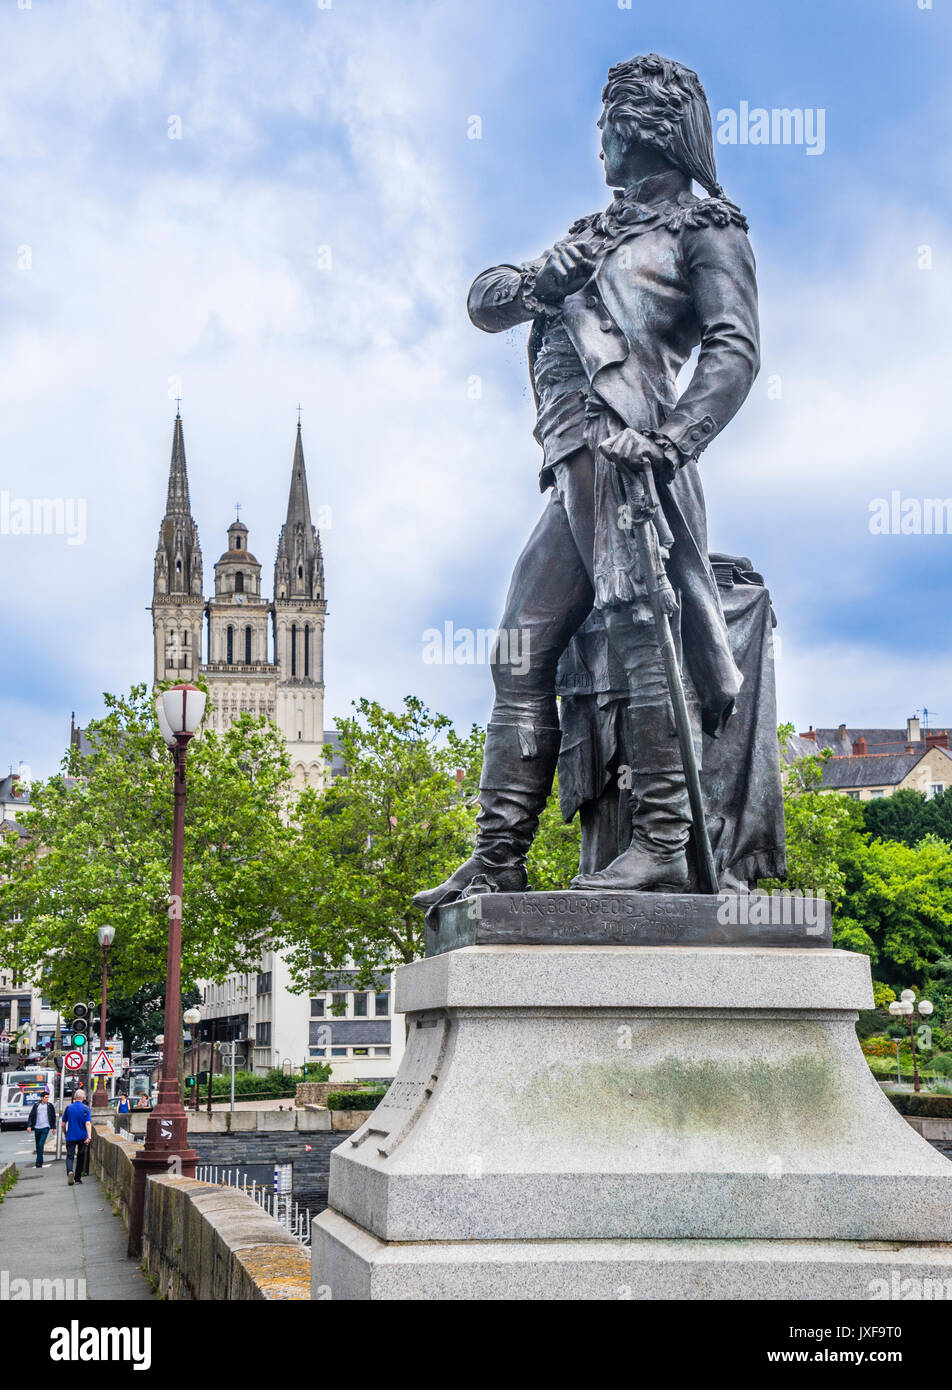 Francia Pays de la Loire, Angers, statua del XVIII secolo francese eroe di guerra Nicolas-Joseph Beaurepaire sul Pont de Verdun, sullo sfondo la guglia Foto Stock